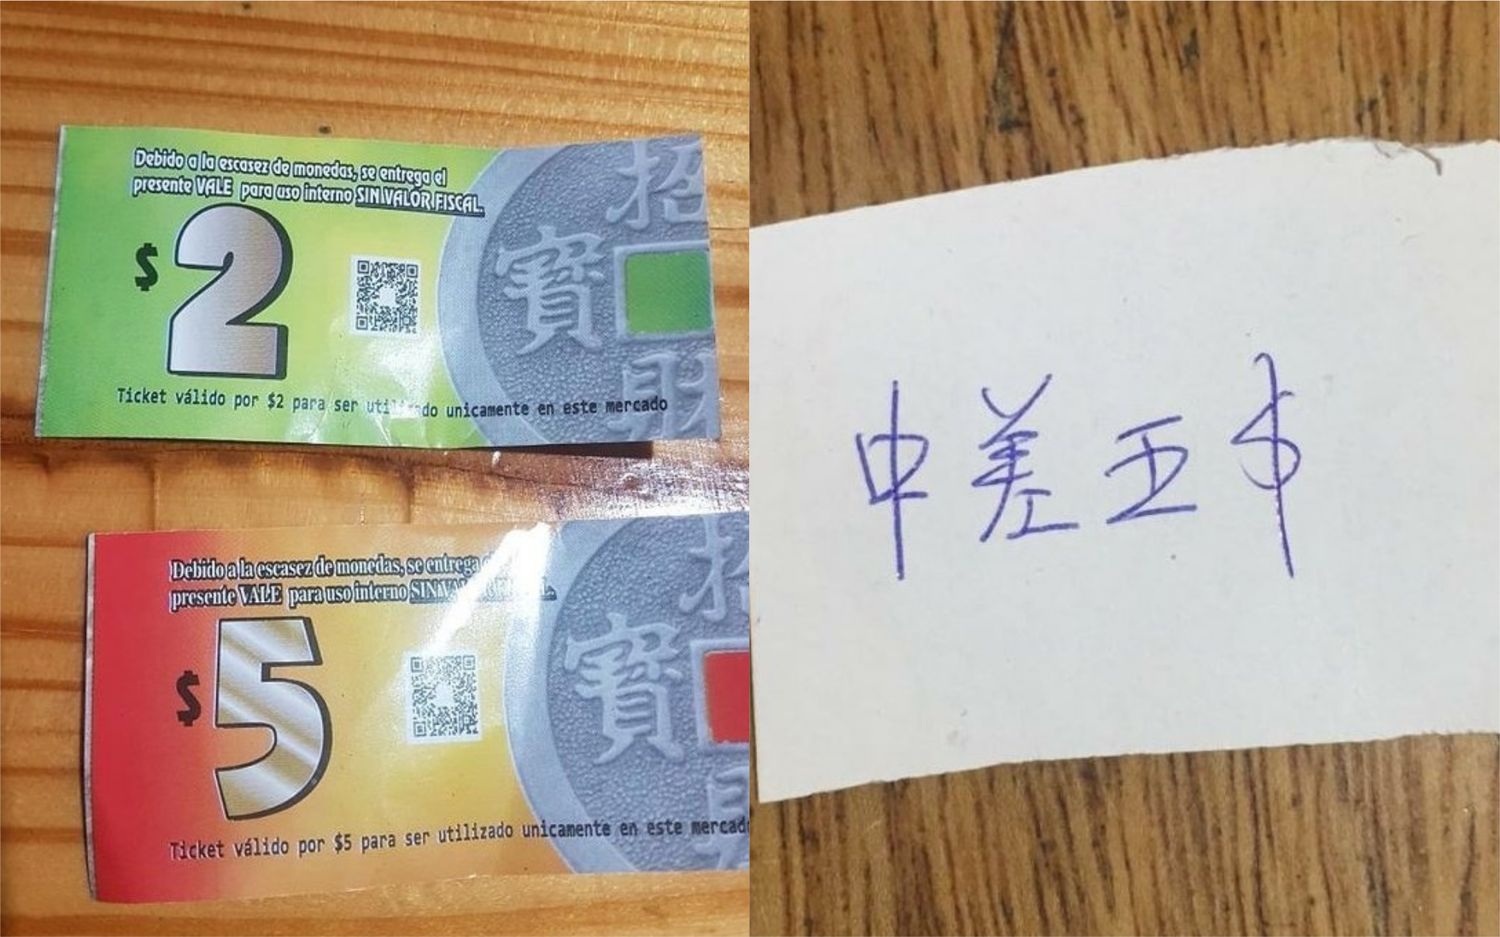 Adiós a los caramelos: Ante la falta de monedas, supermercados chinos de Zona Norte crearon sus propios billetes de $2 y $5